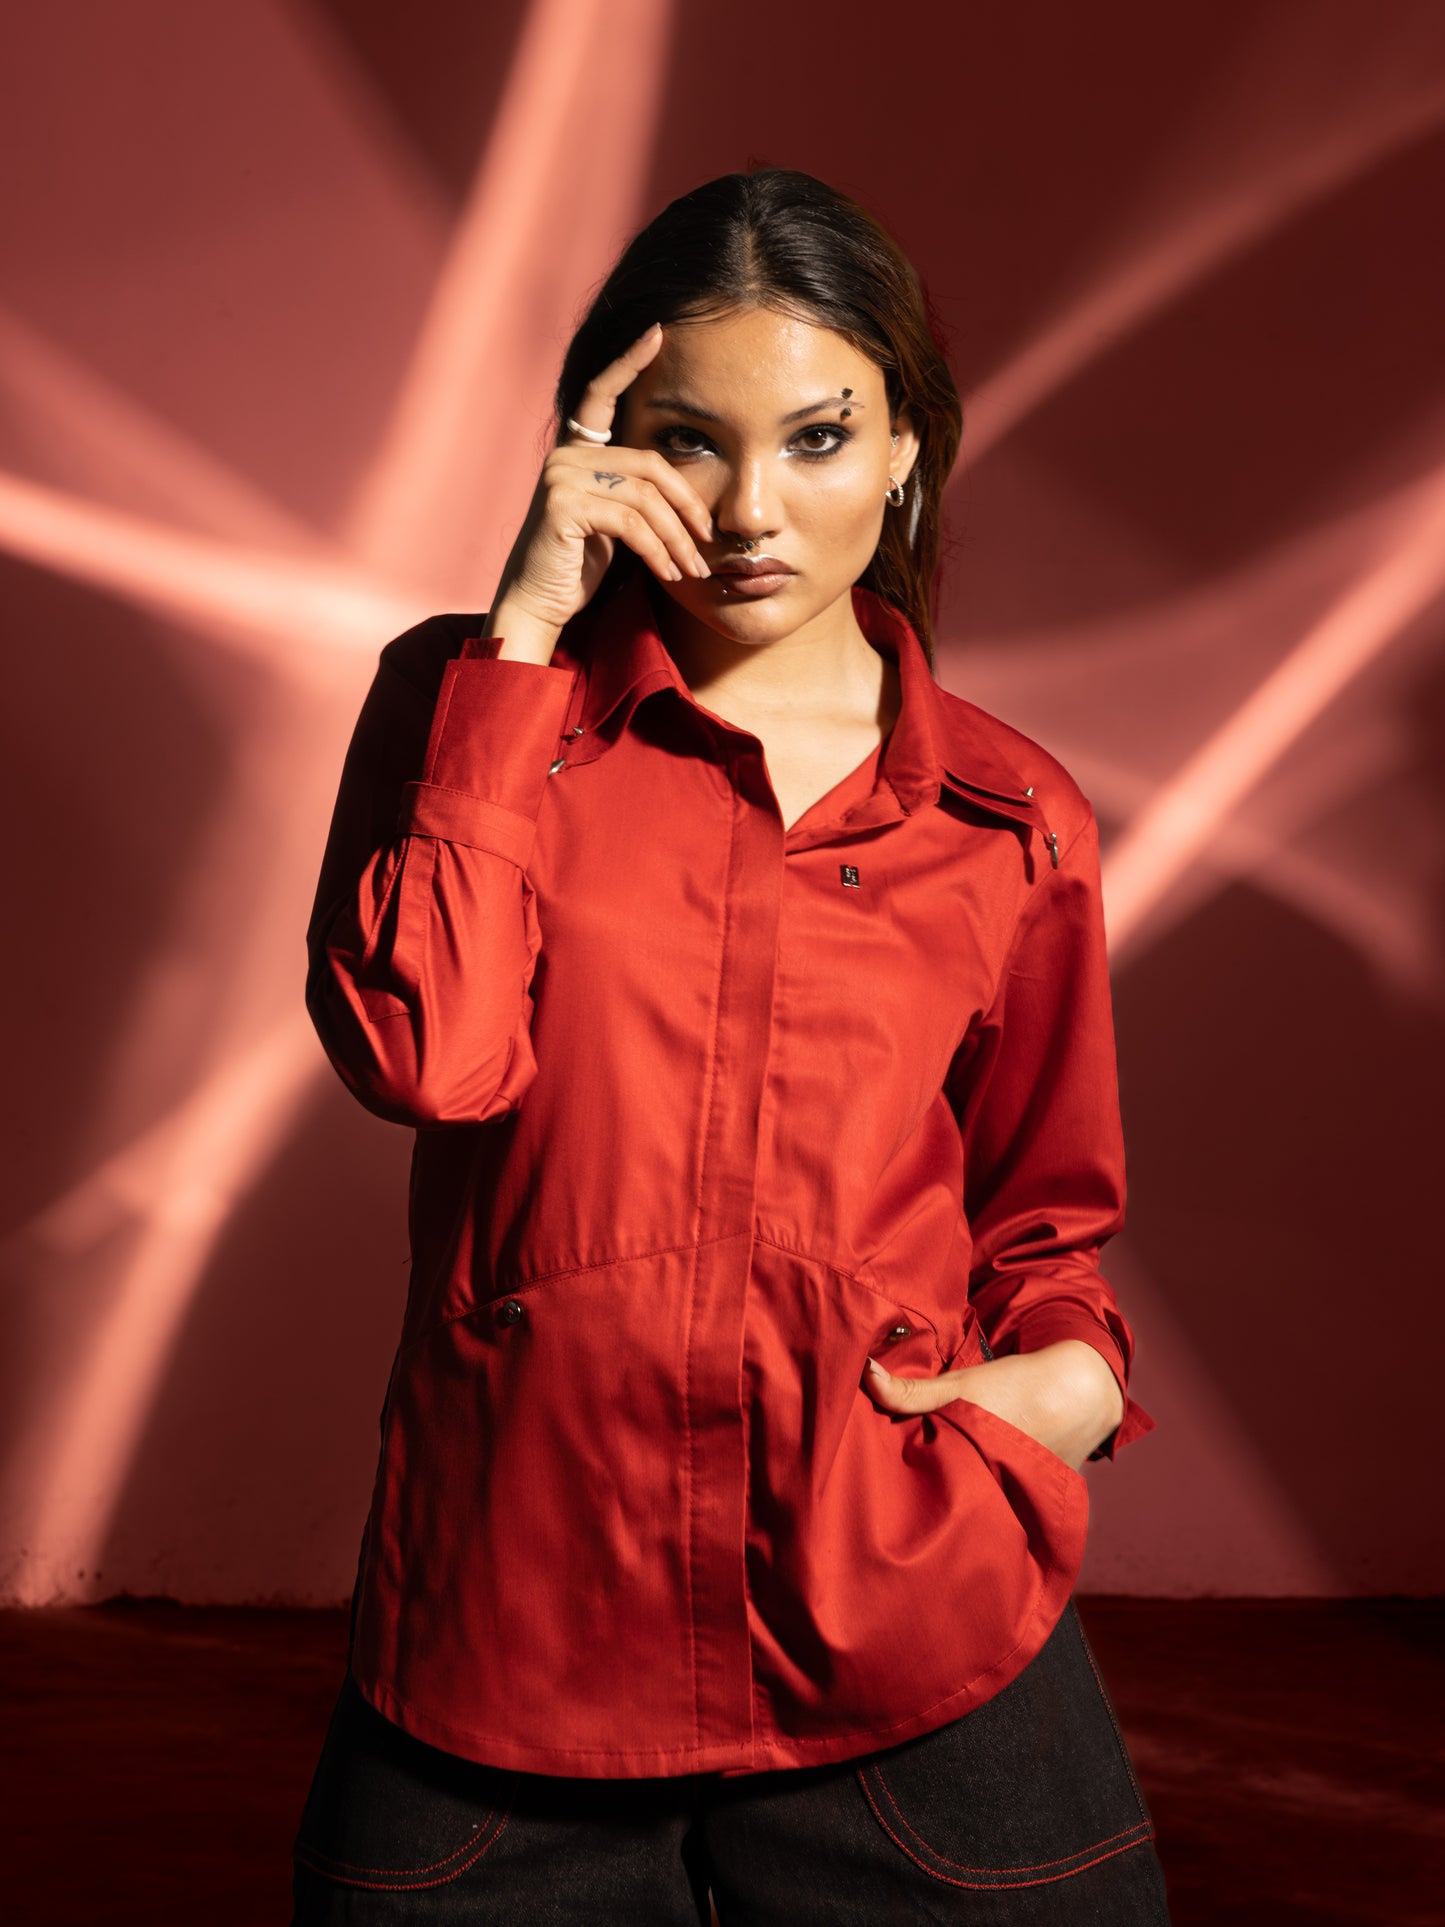 Cotton Sateen Shirt - Red